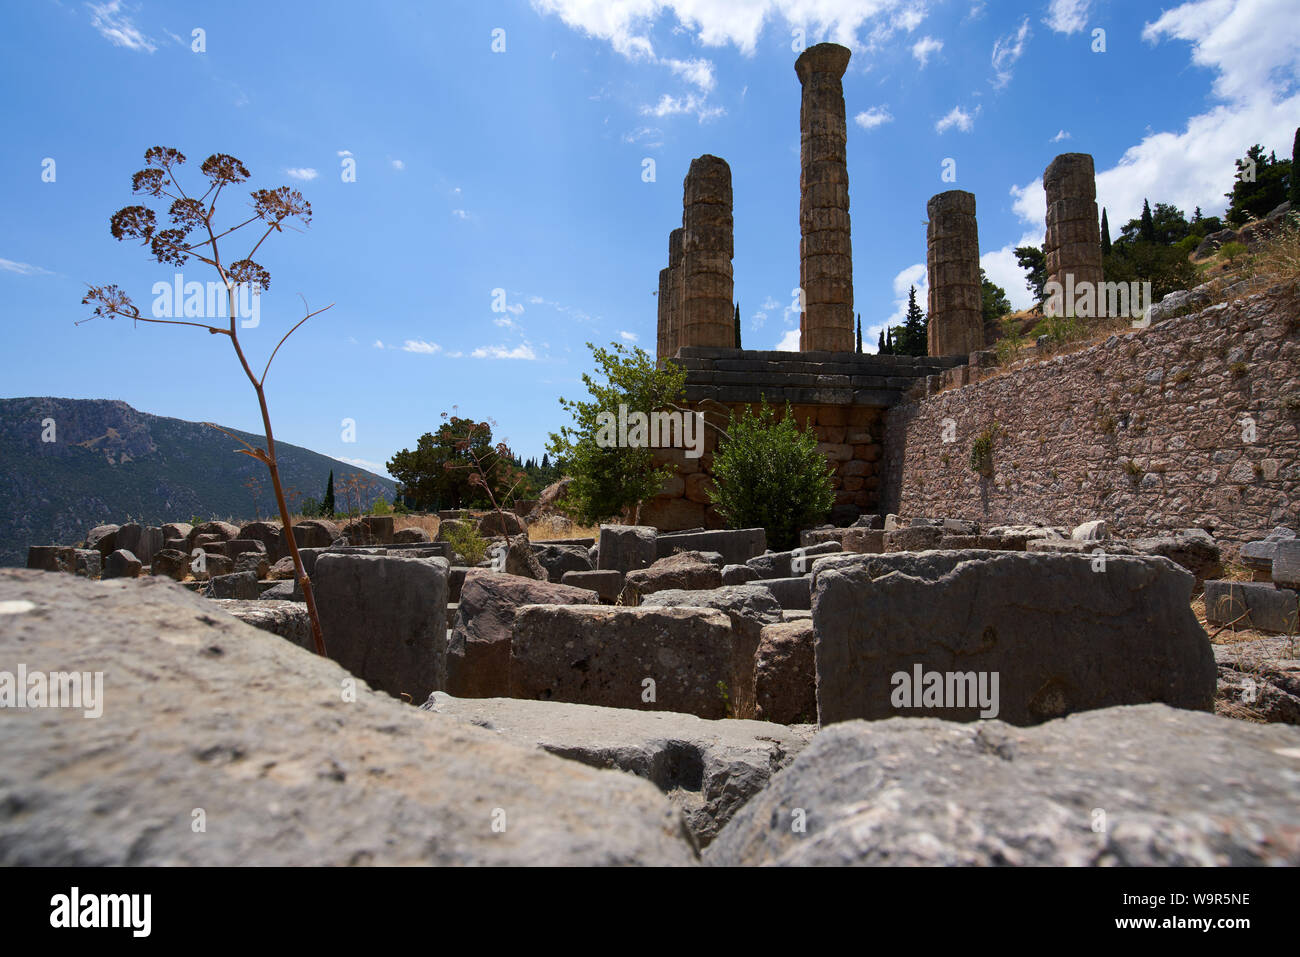 Ruines du temple d'Apollon à Delphes, en Grèce Banque D'Images